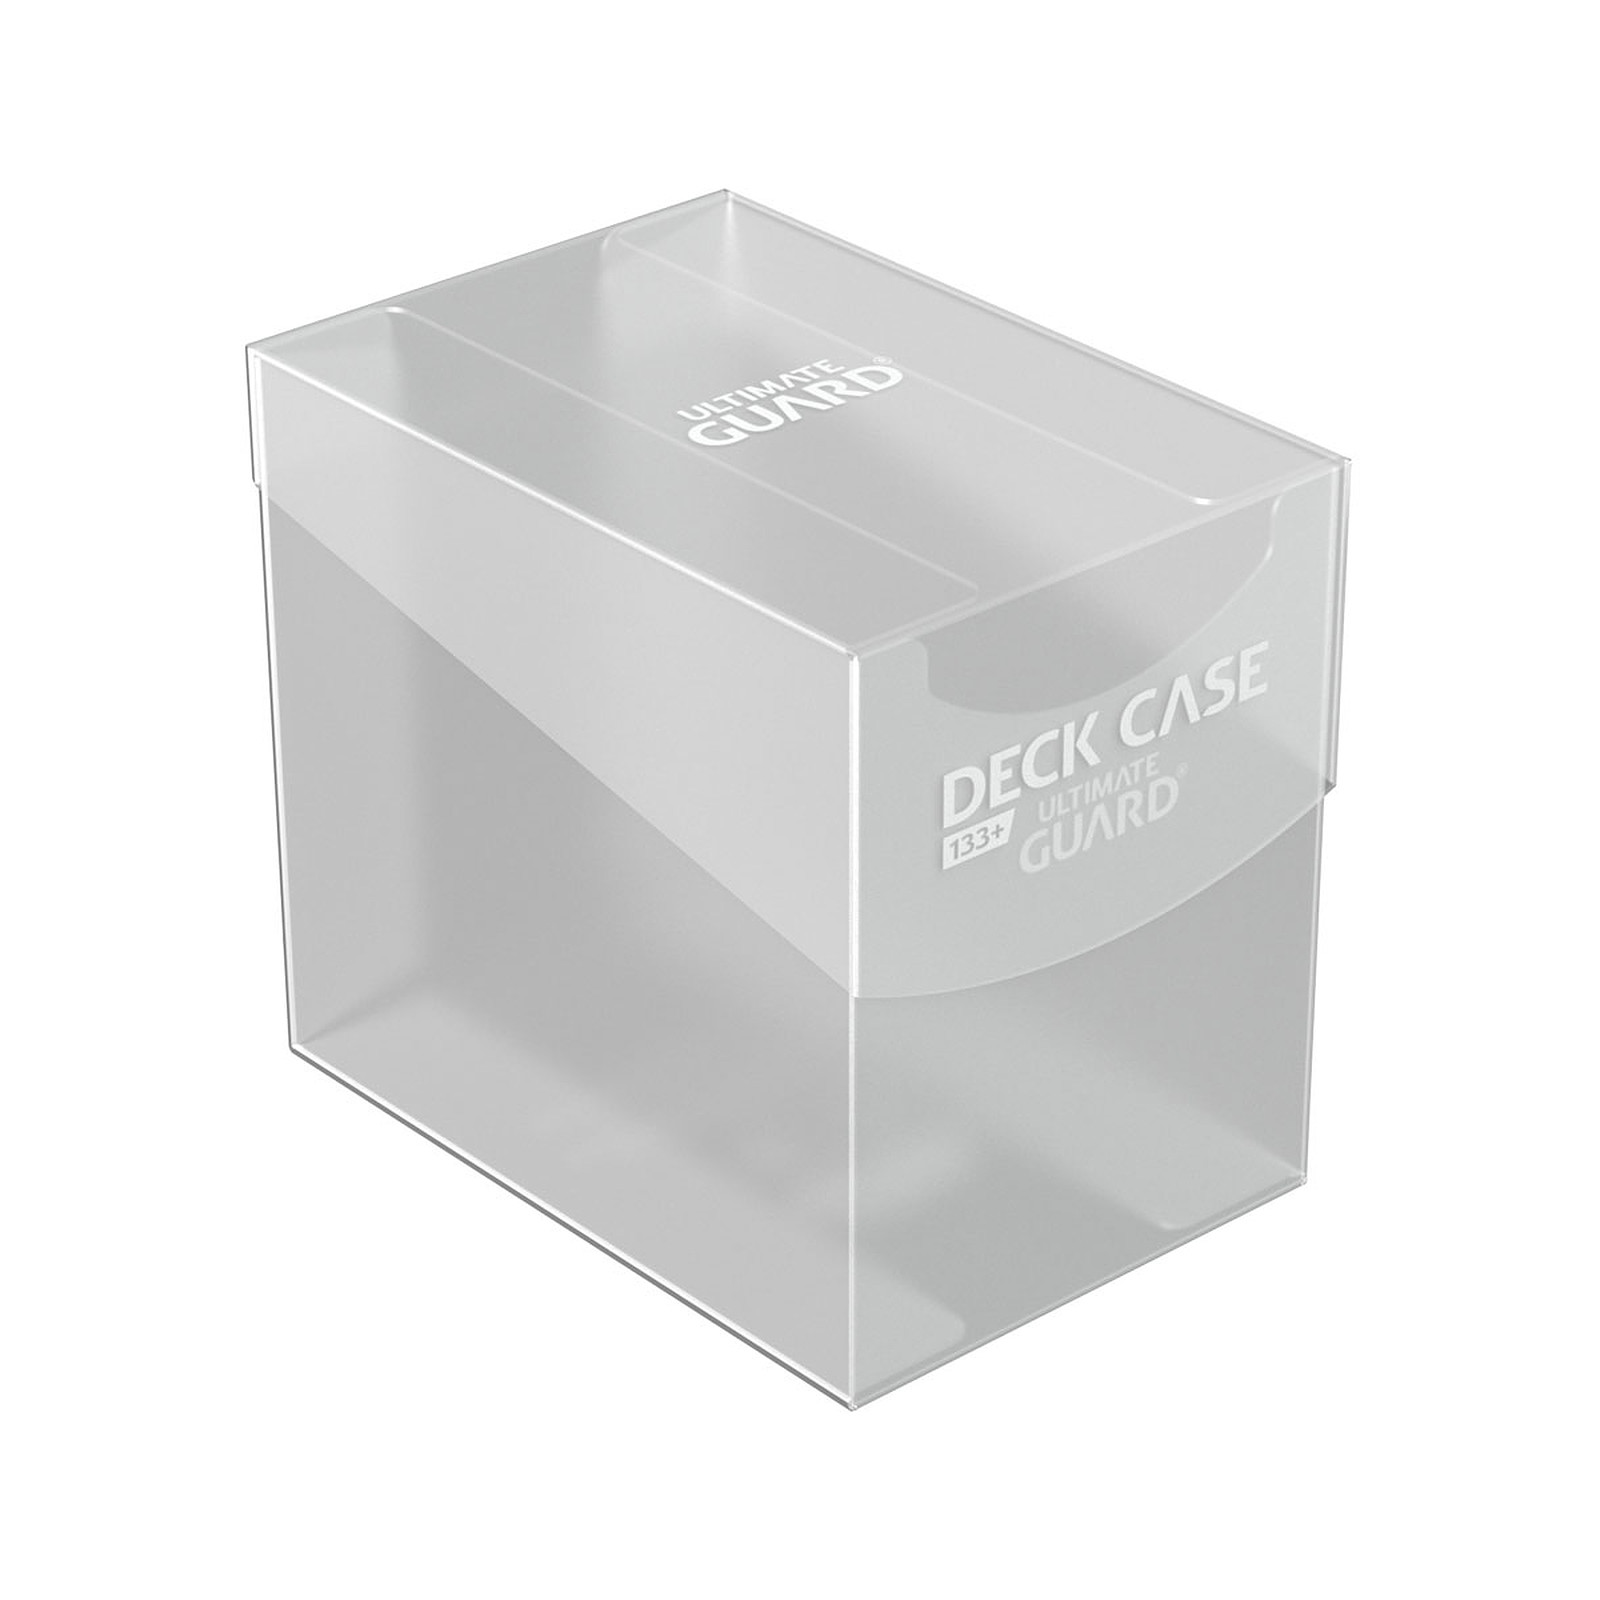 Ultimate Guard - Boite pour cartes Deck Case 133+ taille standard Transparent - Accessoire jeux Ultimate Guard